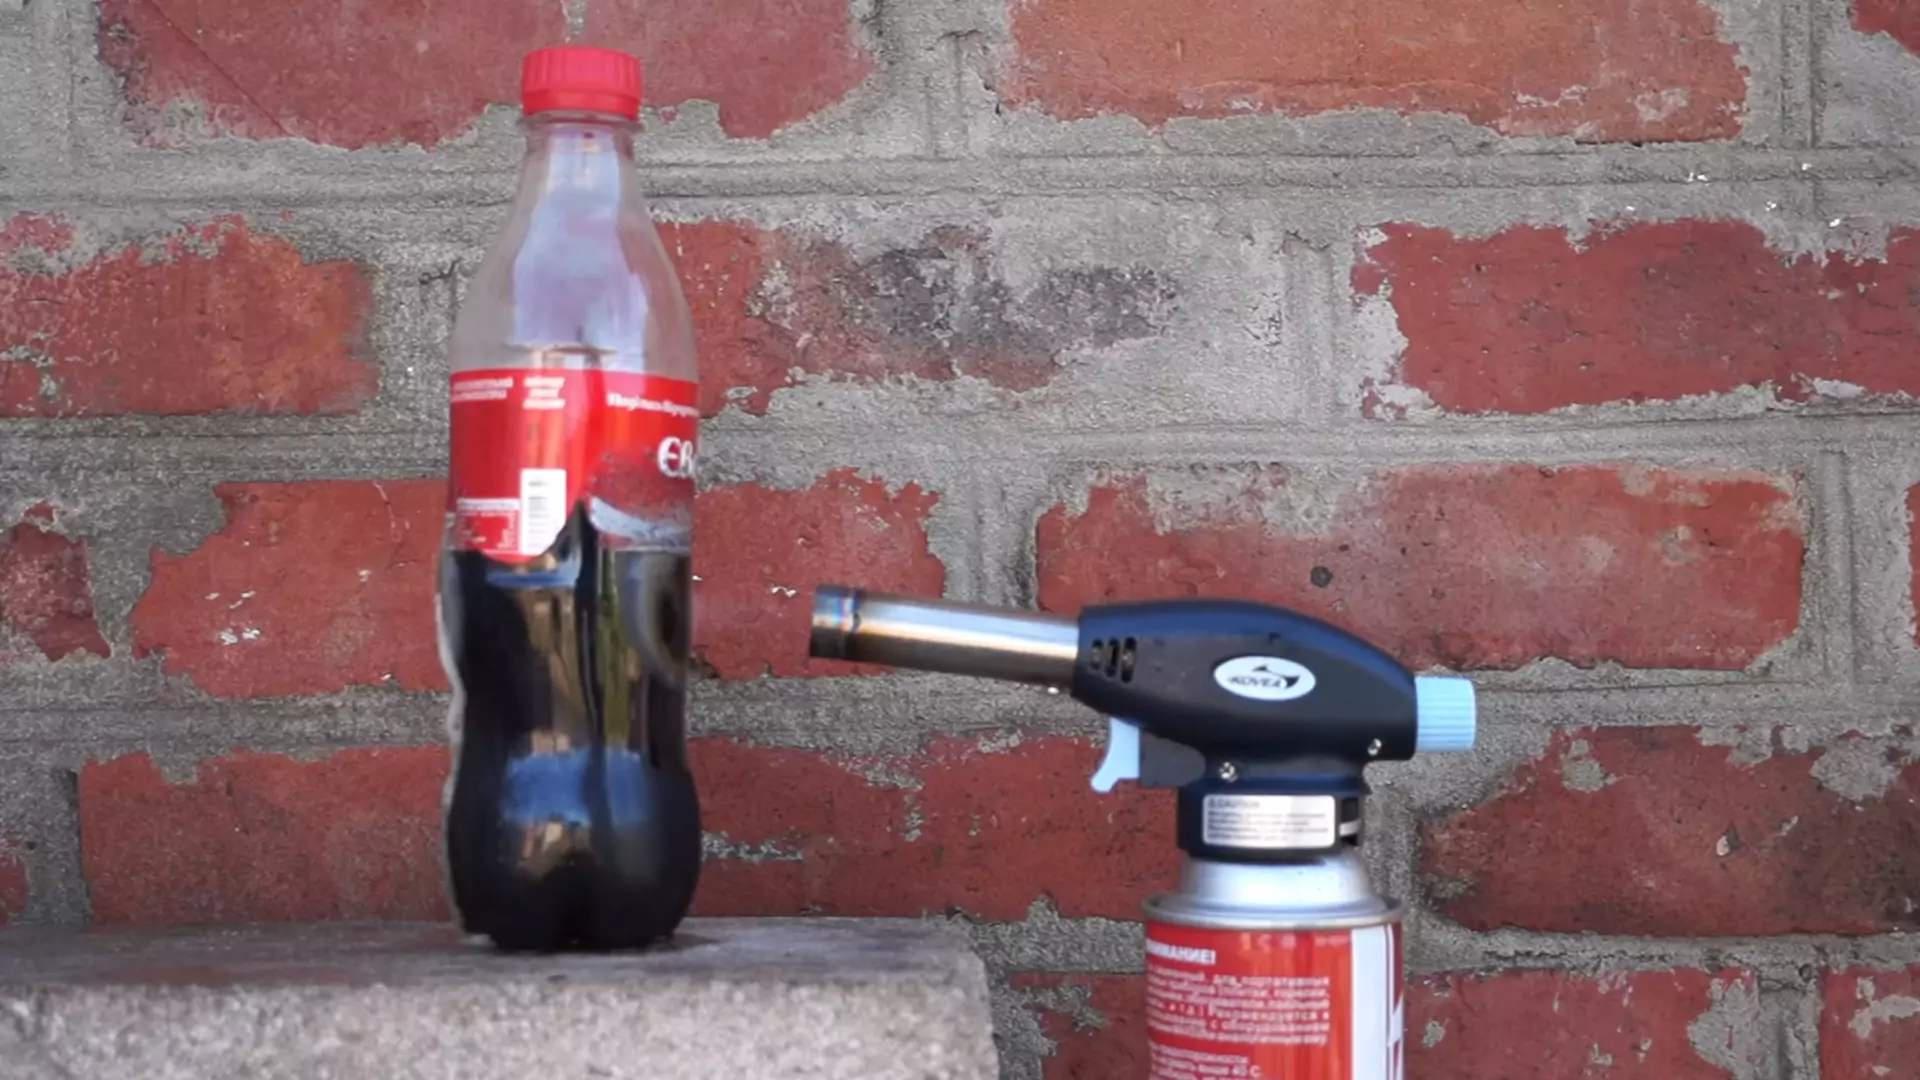 Po rozgrzanym nożu, czas na... miotacz ognia. YouTube ma nowy eksperyment z Coca-Colą